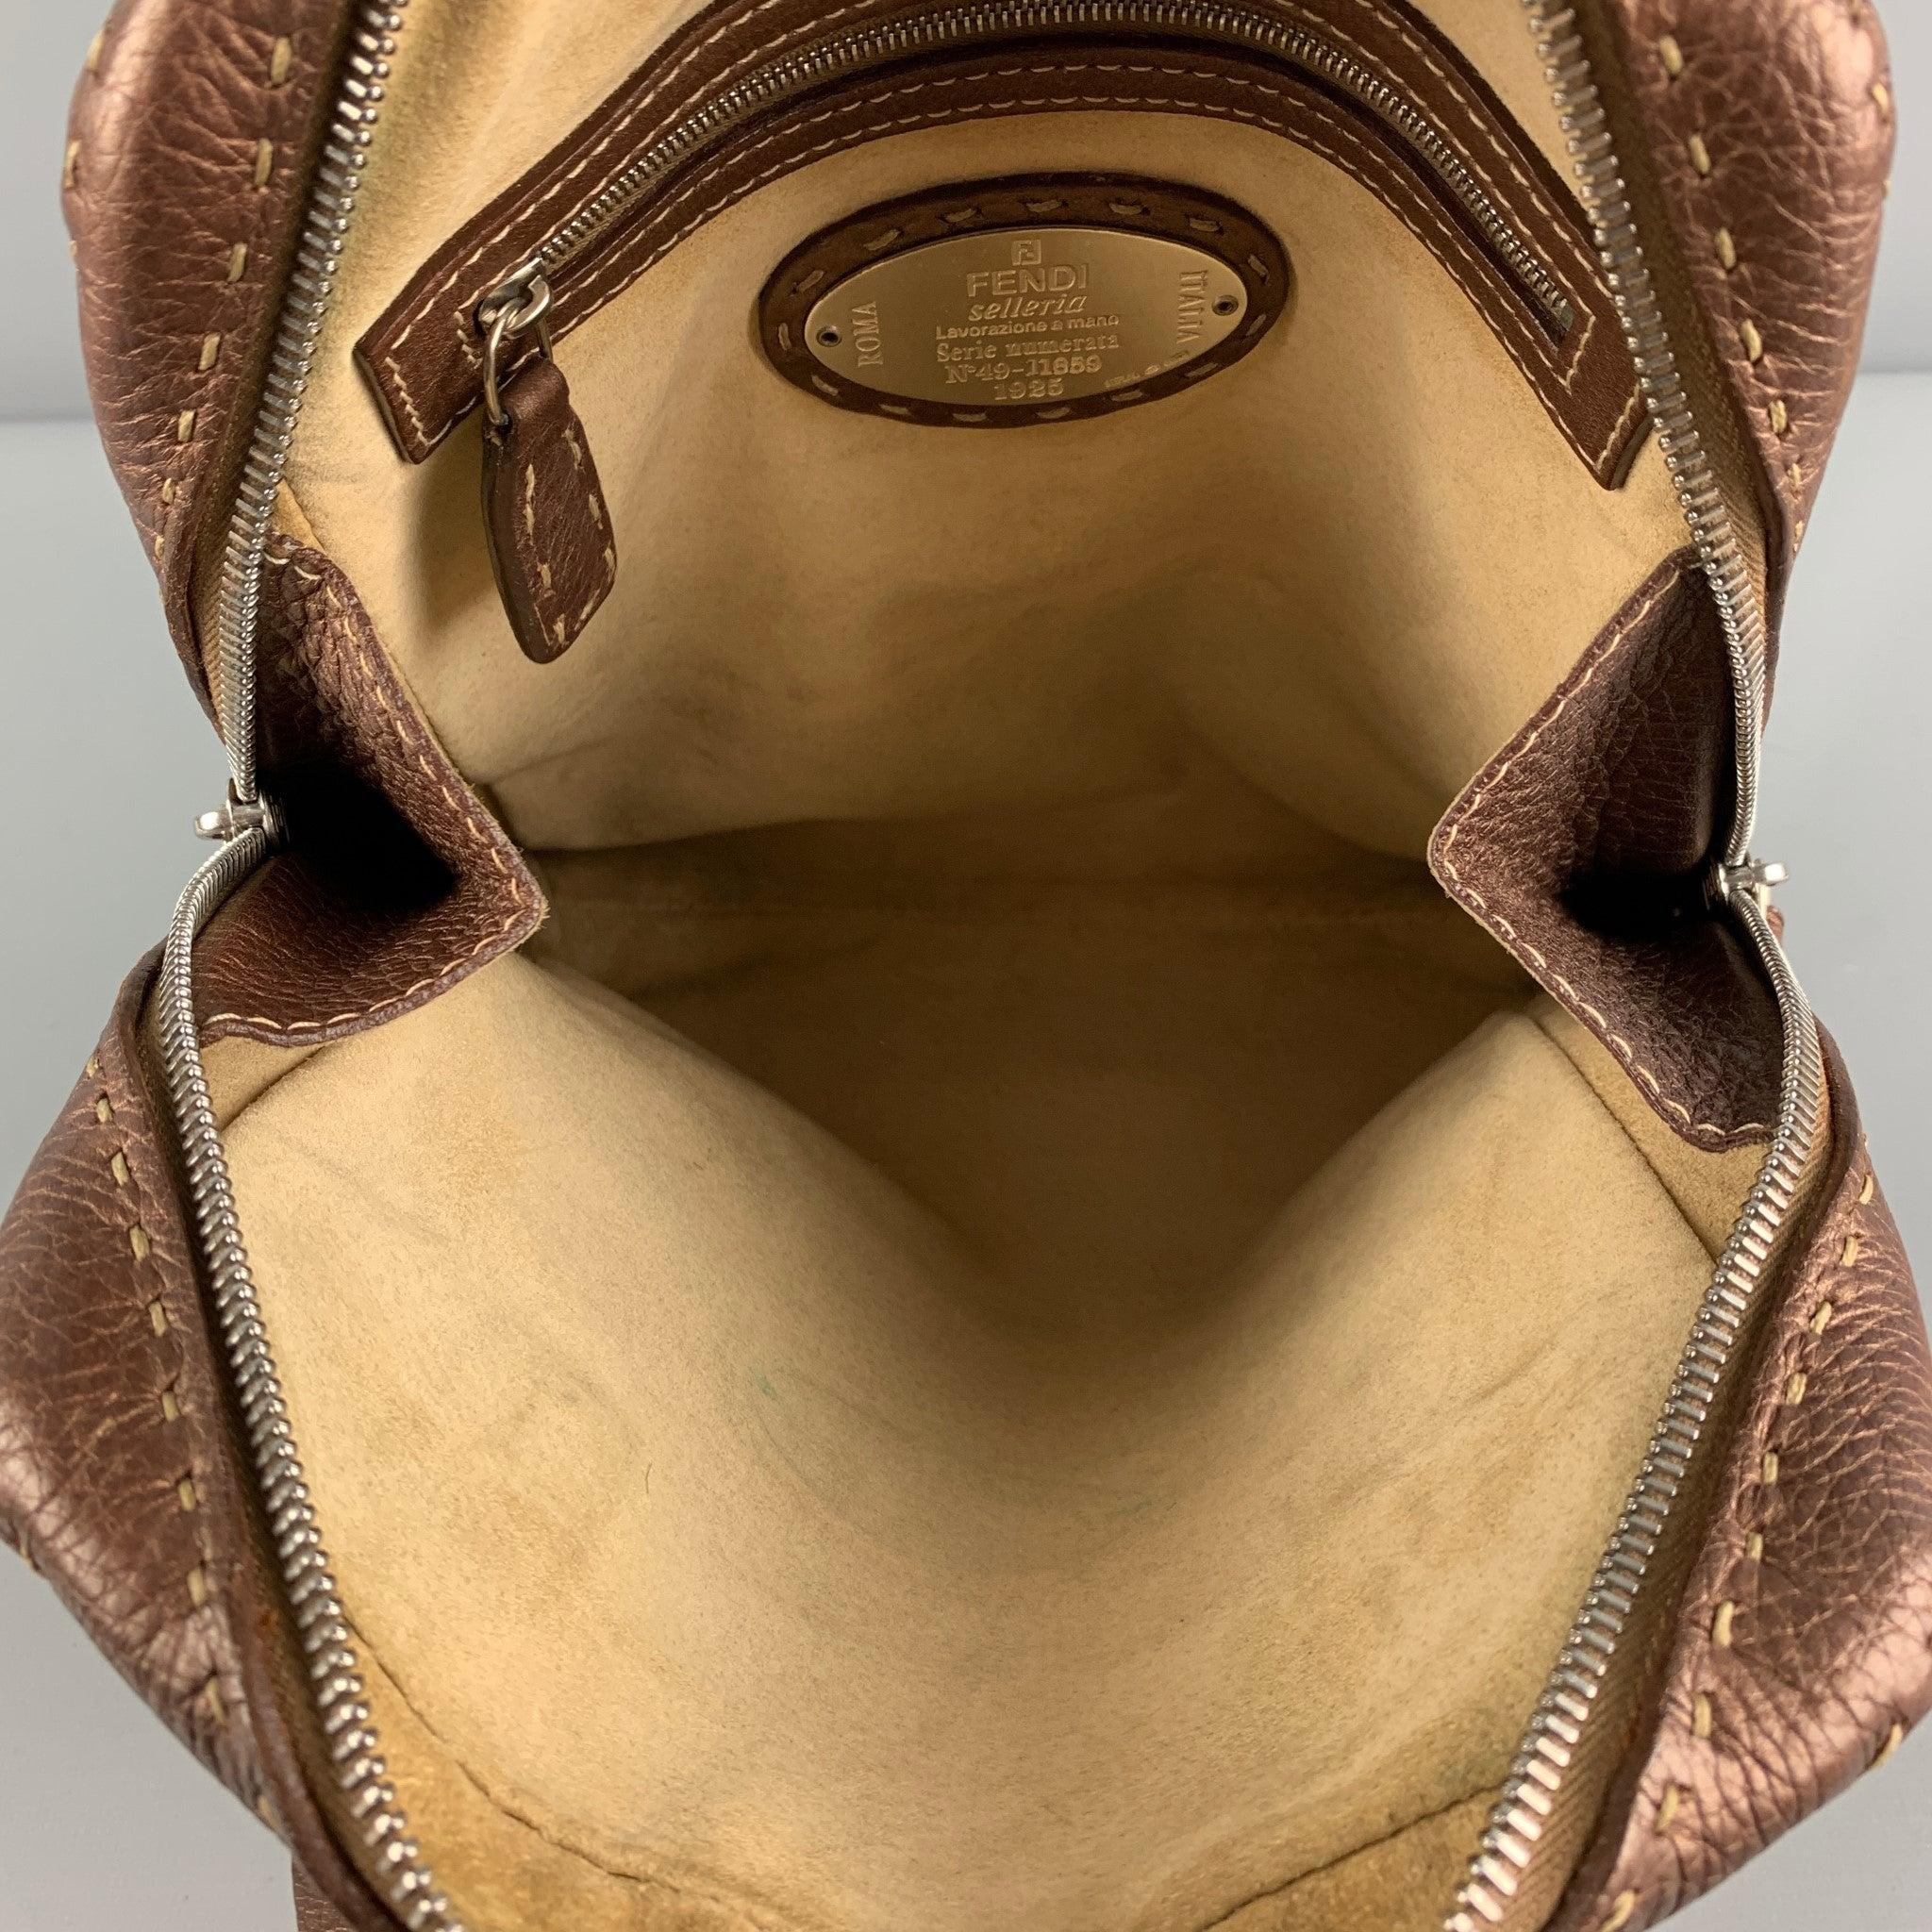 FENDI SELLERIA N49-11859 Copper Contrast Stitch Pebble Grain Leather Handbag For Sale 1